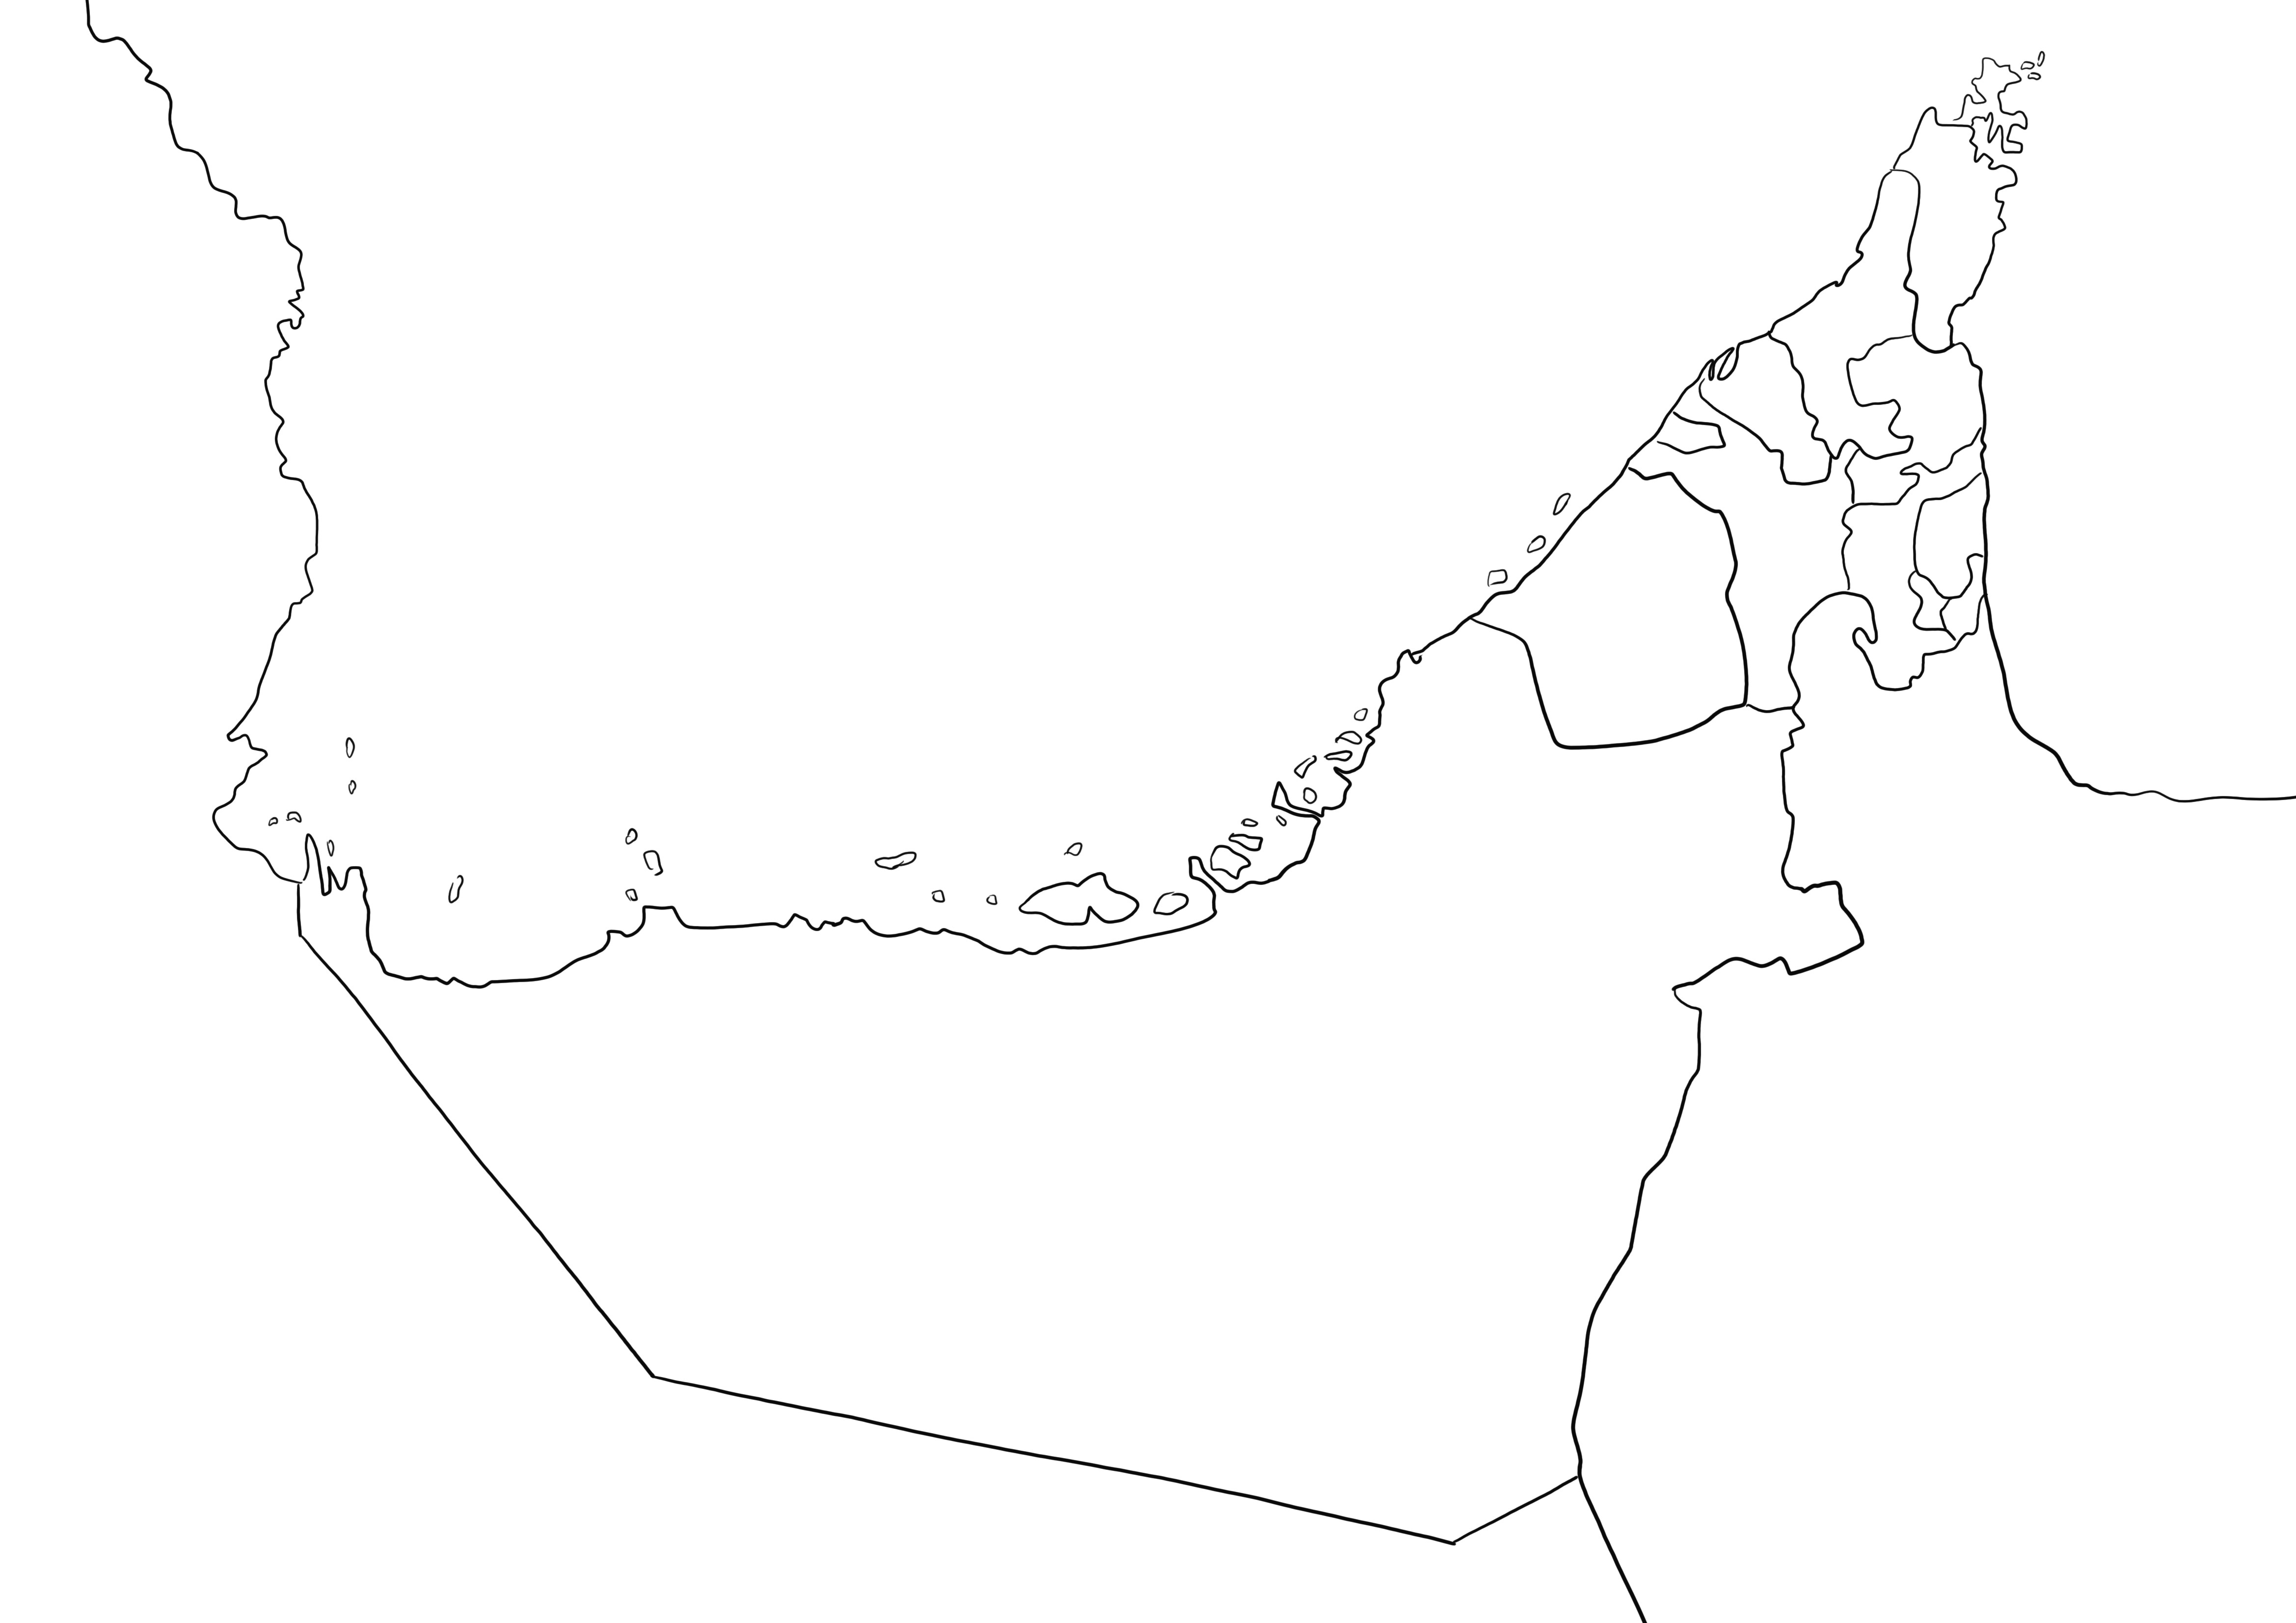 Mapa Zjednoczonych Emiratów Arabskich Zwykła strona do bezpłatnego wydrukowania w czerni i bieli, łatwa do pokolorowania przez dzieci